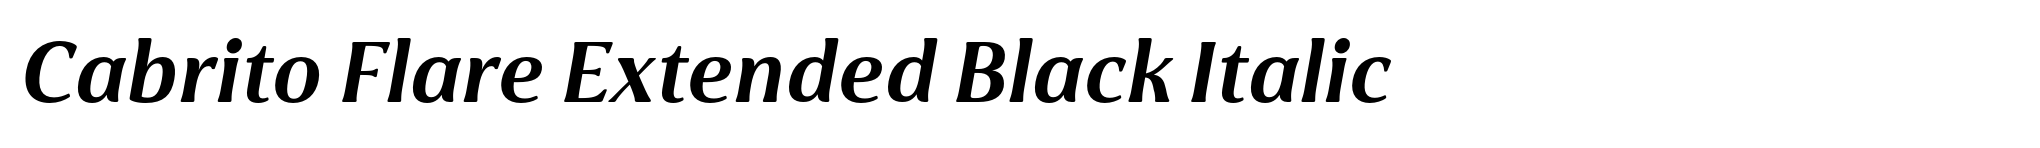 Cabrito Flare Extended Black Italic image